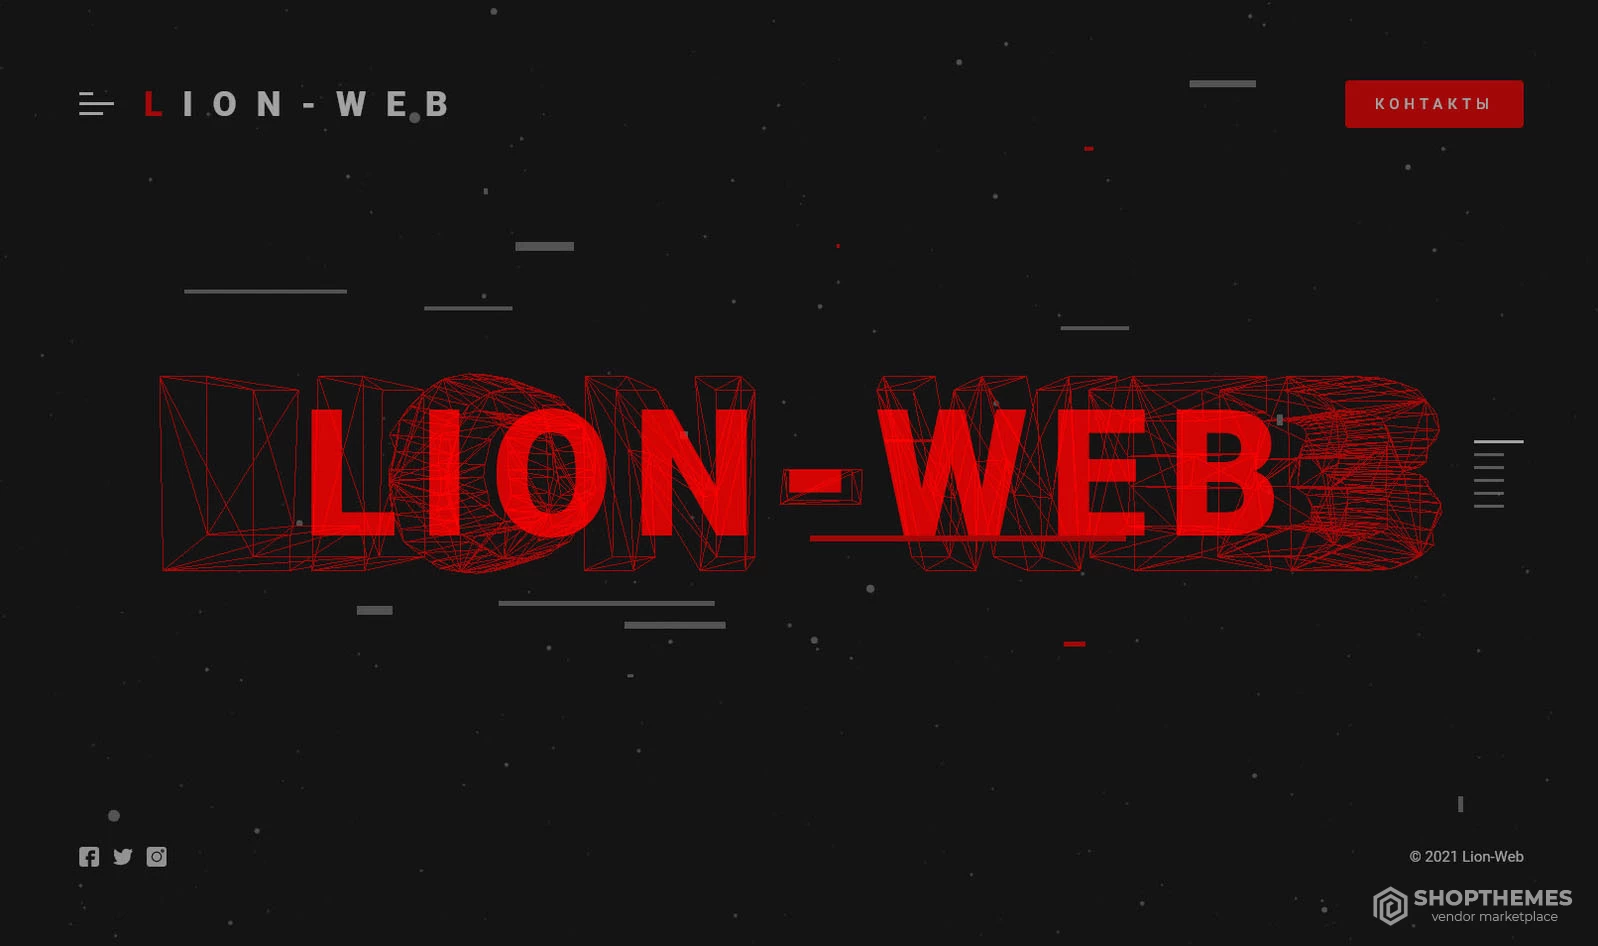 LION-WEB